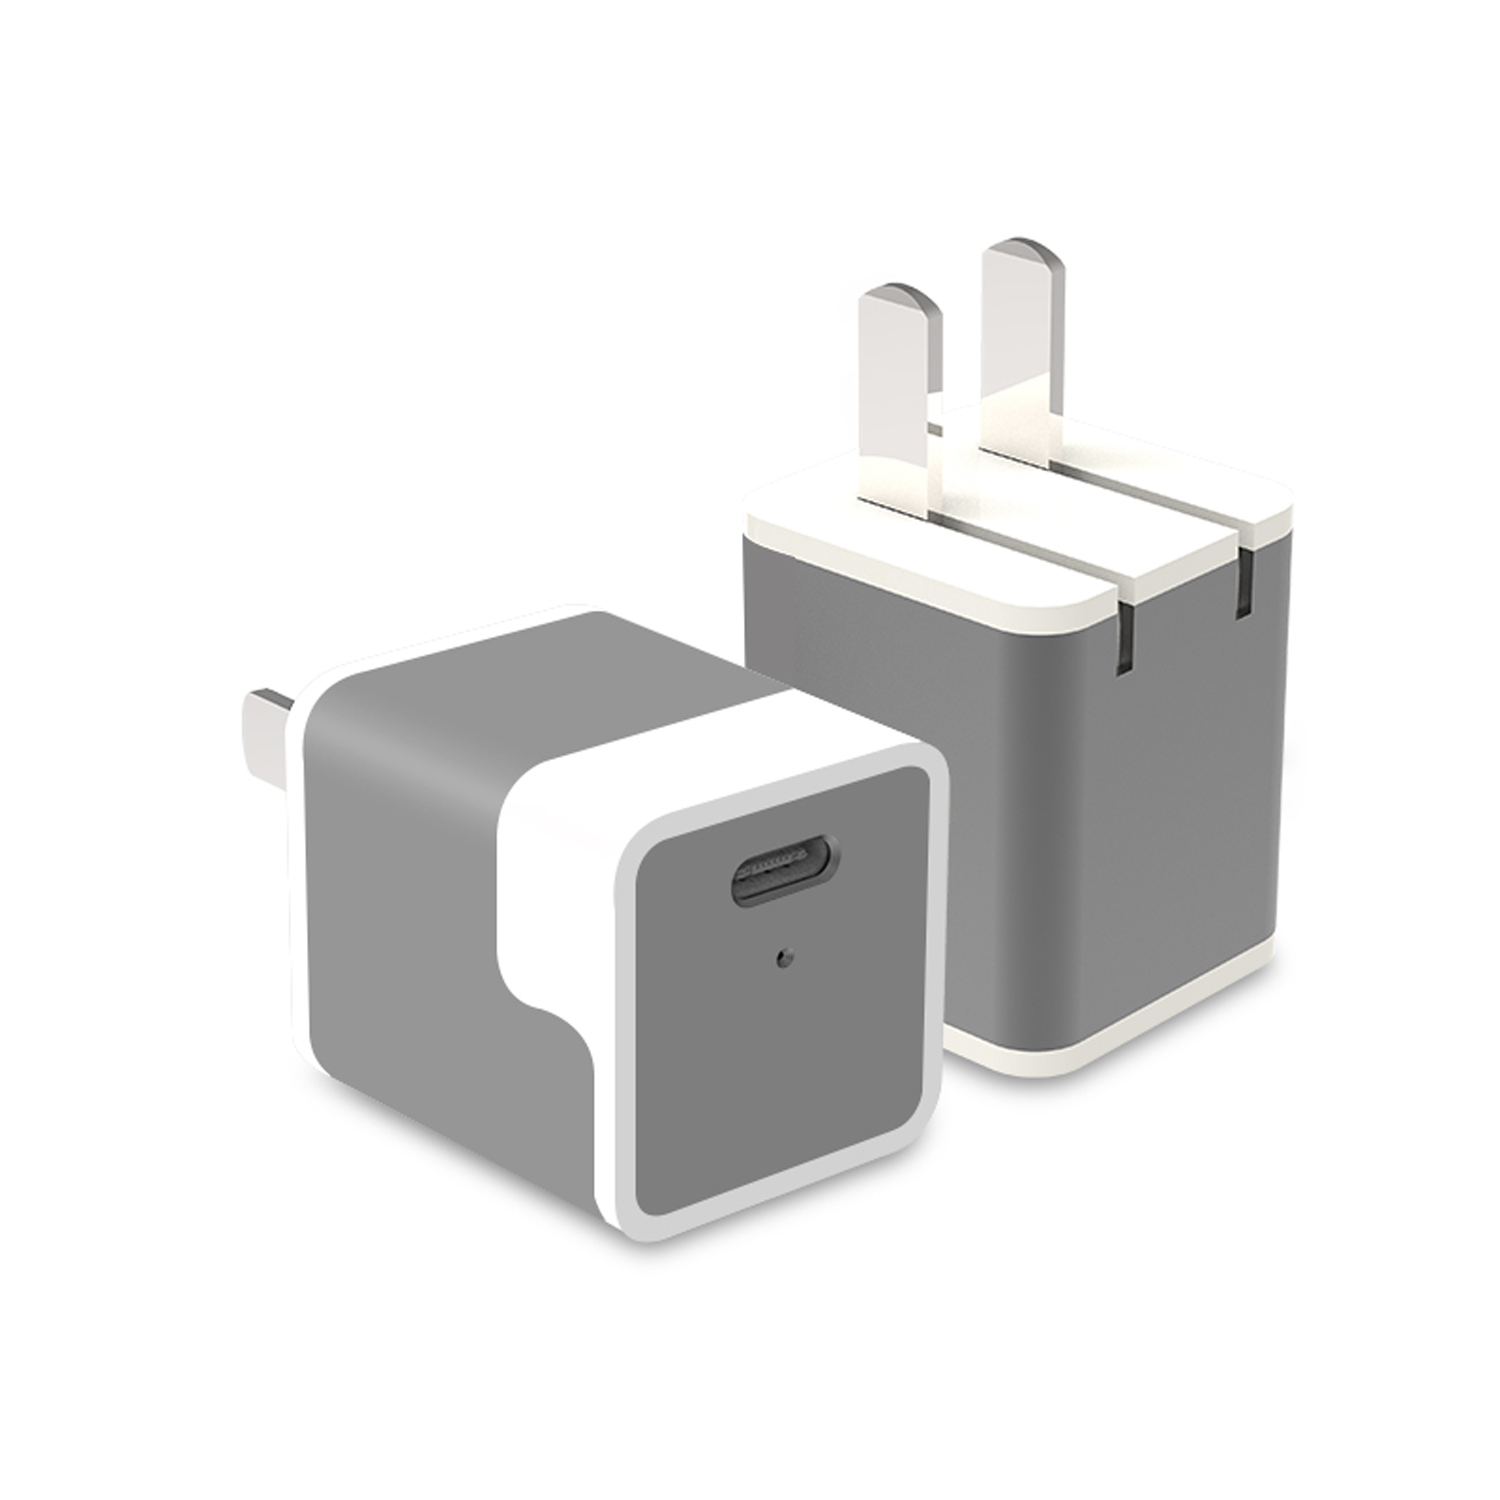 Adaptador de corriente portátil de carga rápida de 20 W para iPhone